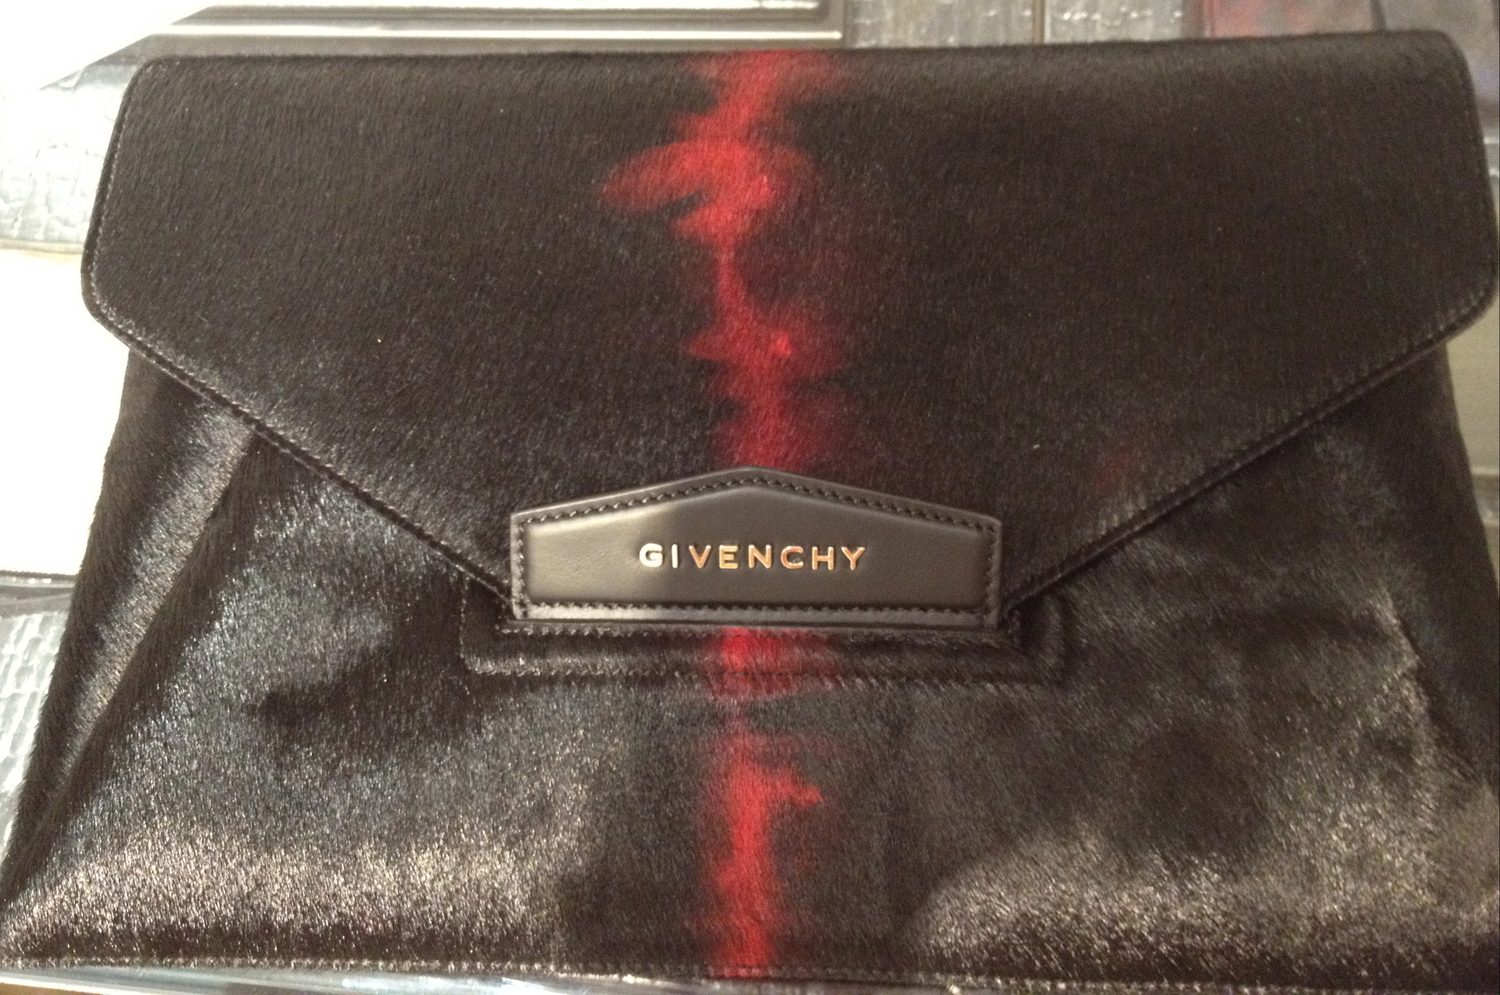 Givenchy Antigona Envelope Clutch in Natural